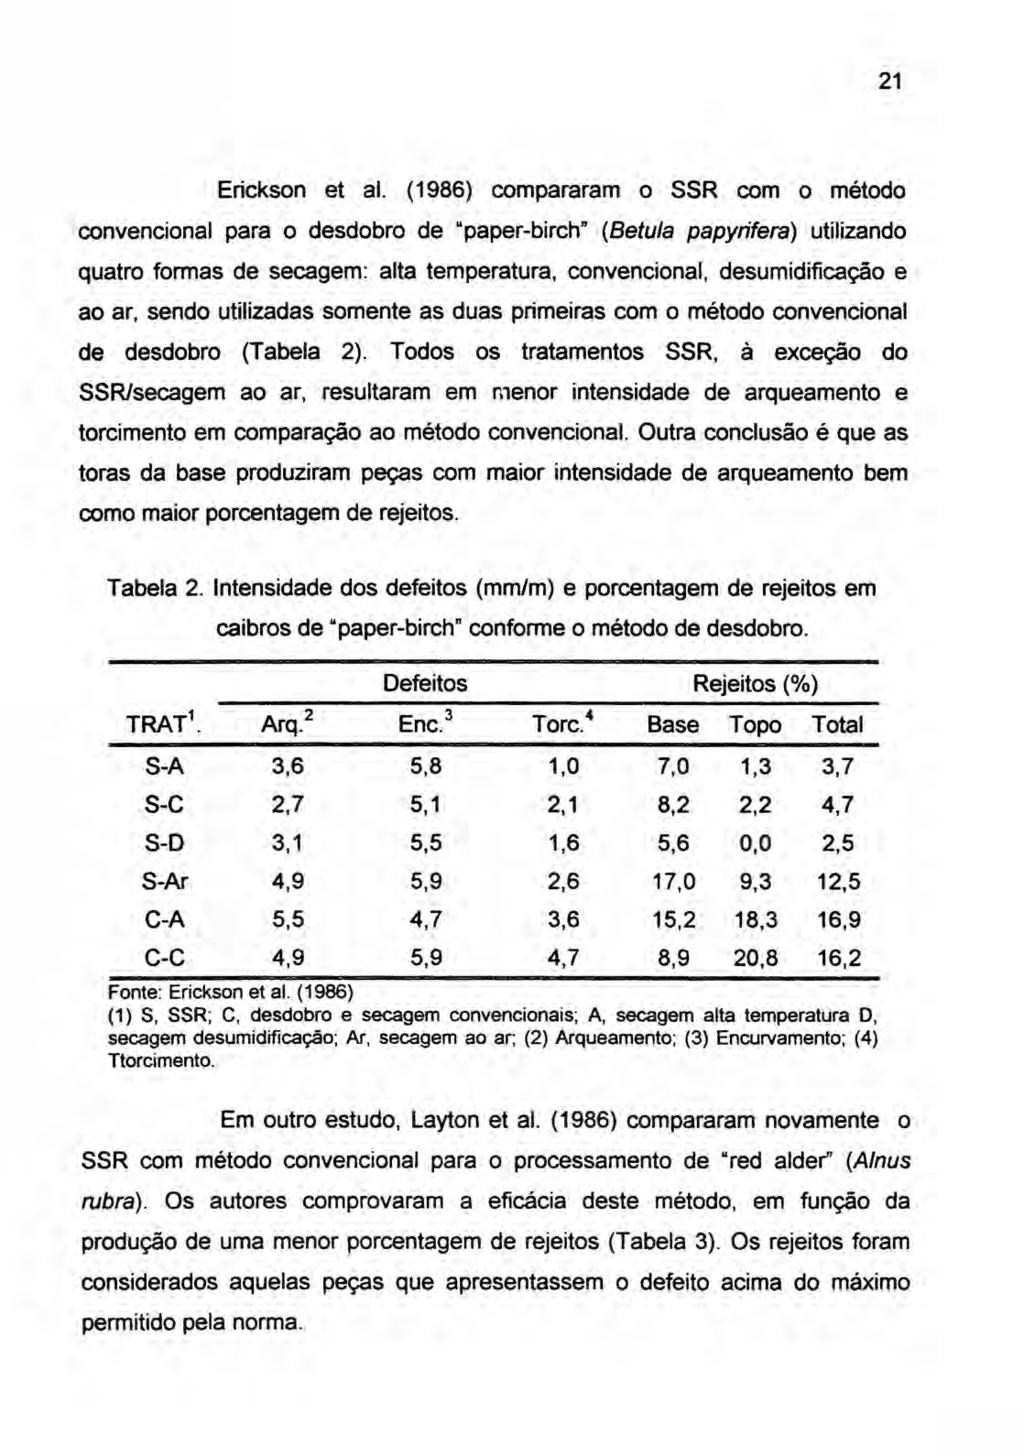 21 Erickson et alo (1986) compararam o SSR com o método convencional para o desdobro de "paper-birch" (Betu/a papyrifera) utilizando quatro formas de secagem: alta temperatura, convencional,